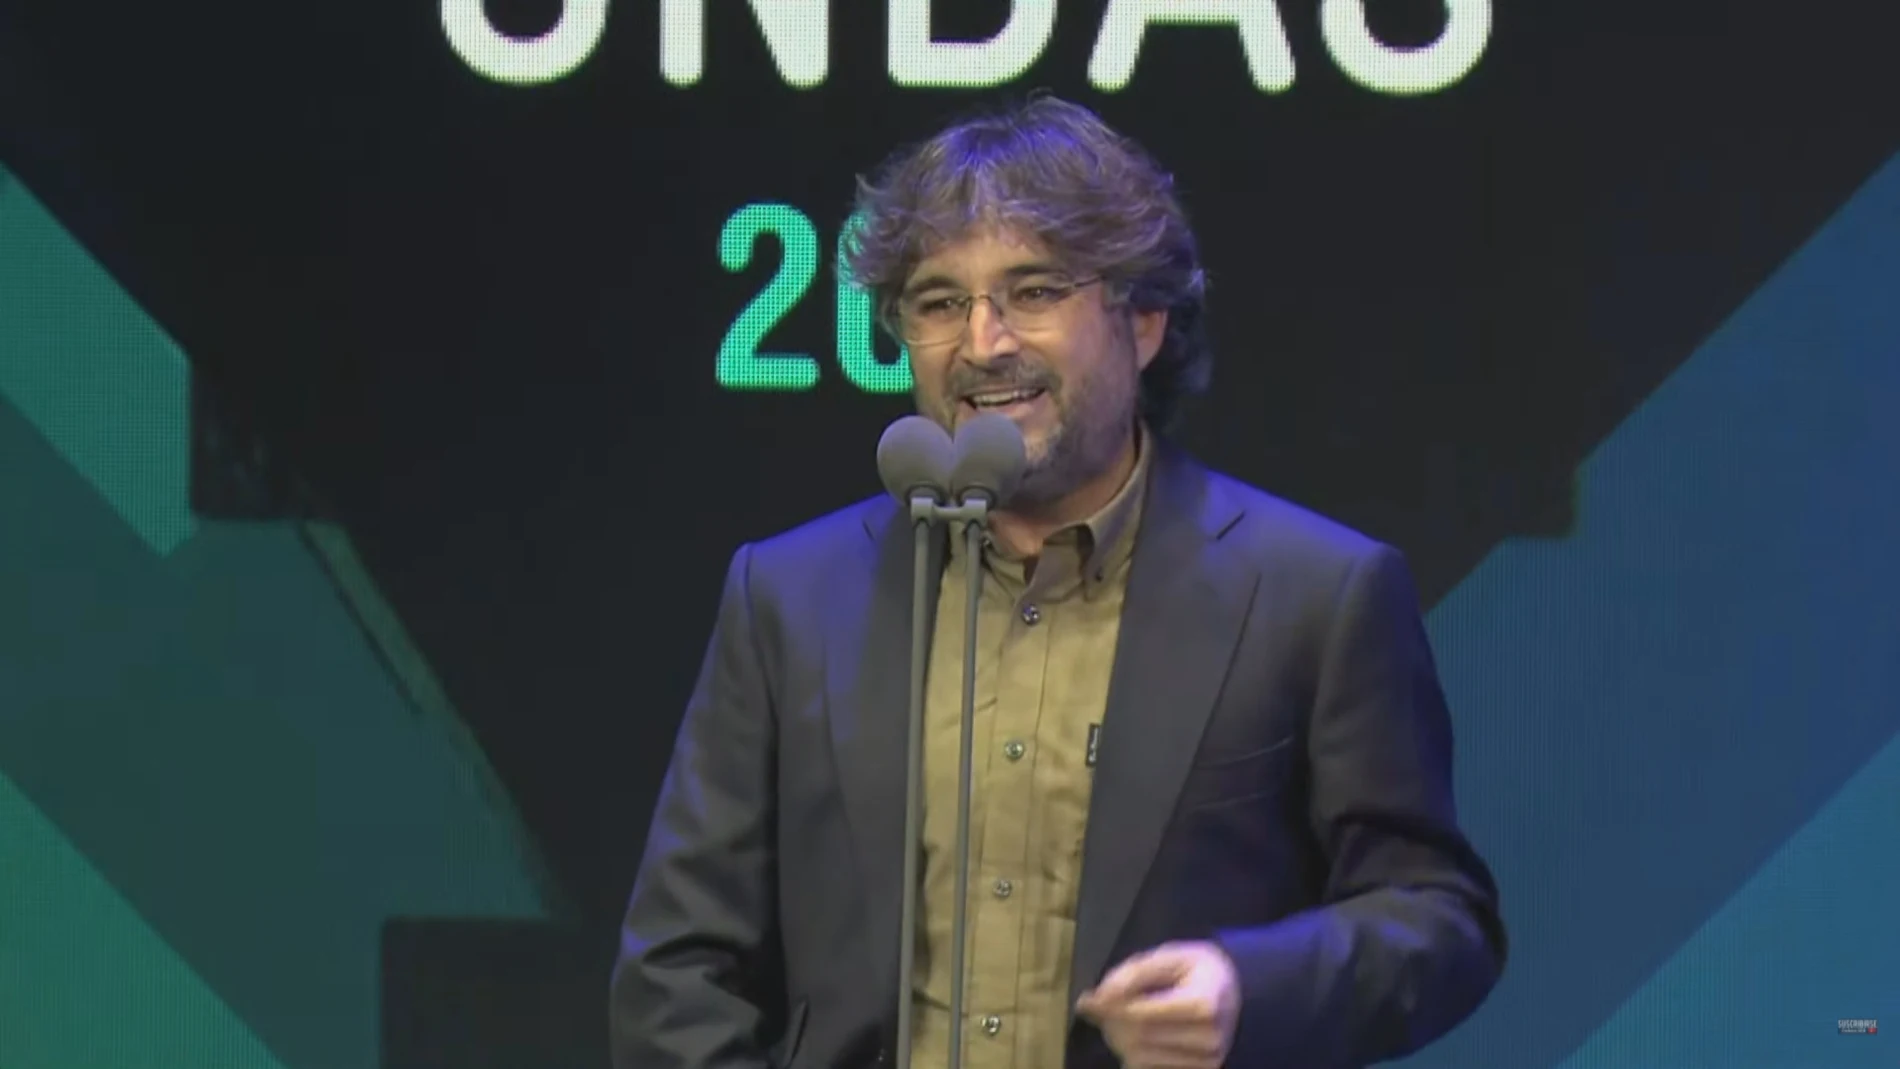 Jordi Évole canta &#39;Grita&#39; en honor a Pau Donés tras recibir el premio Ondas a mejor documental por &#39;Eso que tú me das&#39;